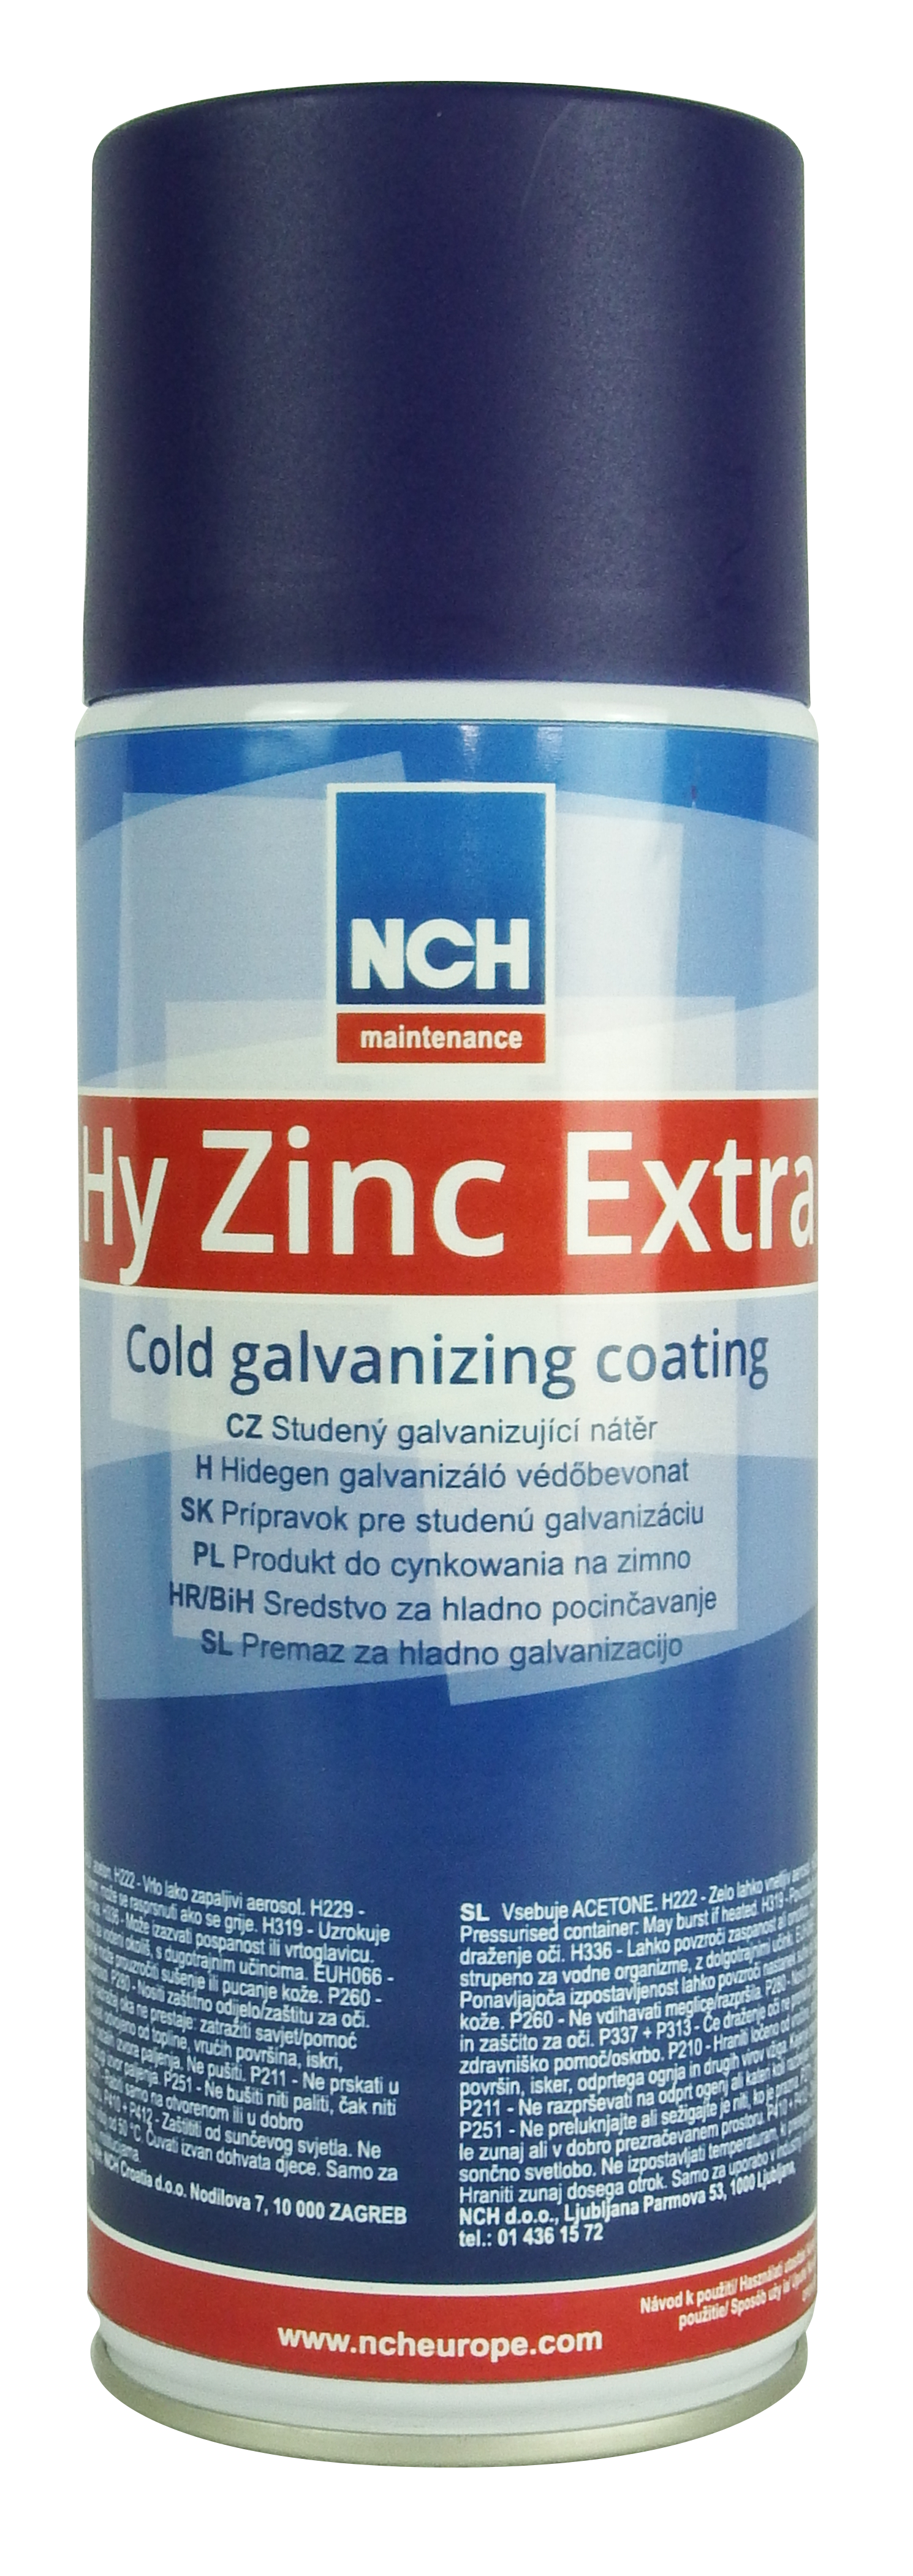 Hy Zinc Extra